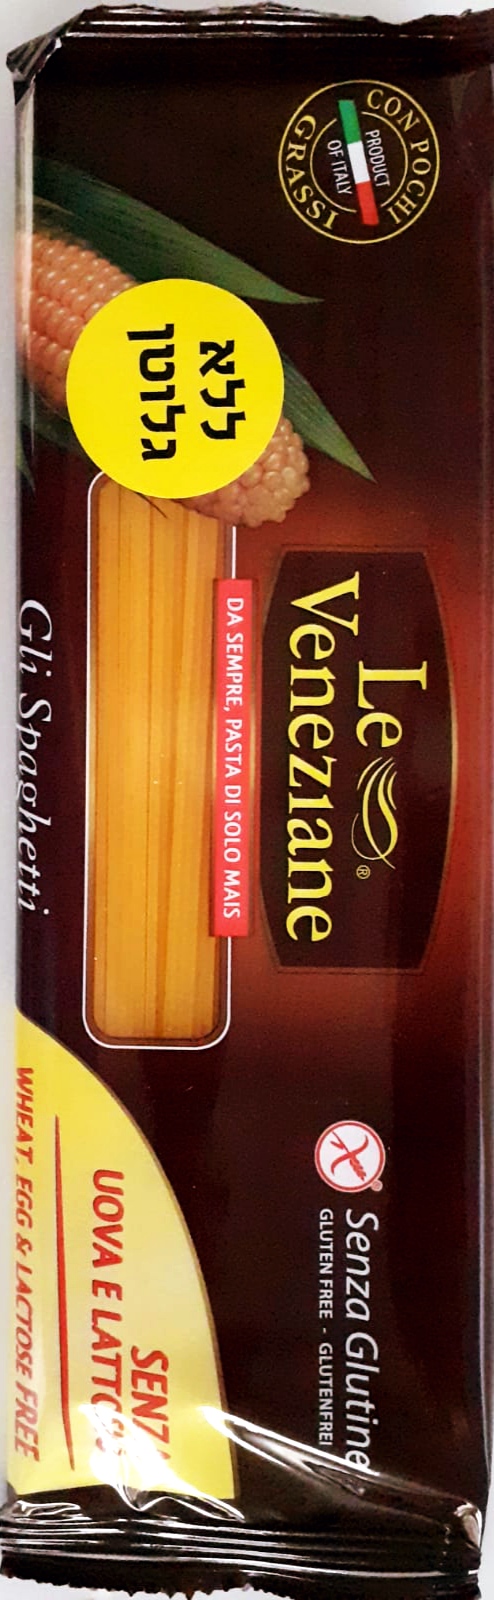 ספגטי Spaghetti La Veneziane  ללא גלוטן כשר לפסח